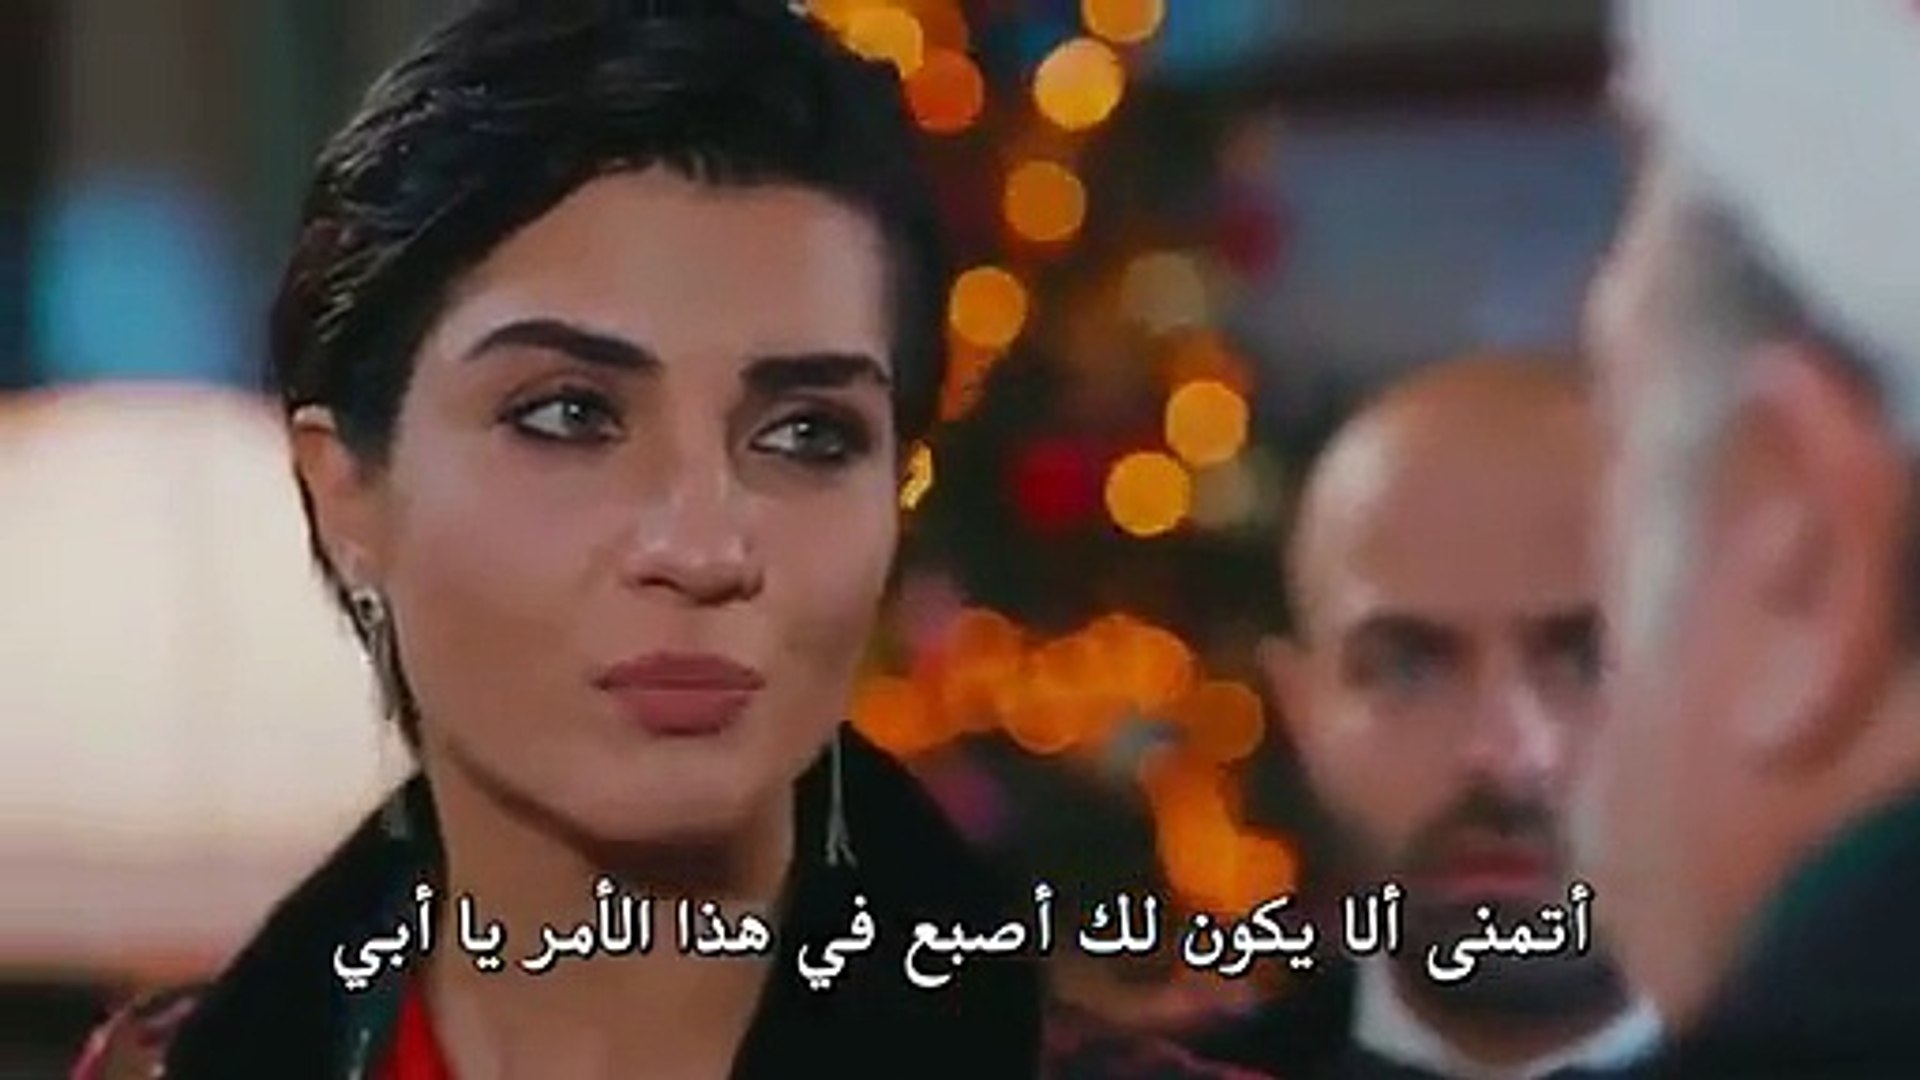 مسلسل جسور والجميلة الحلقة 9 مترجم للعربية اعلان 1 - video Dailymotion